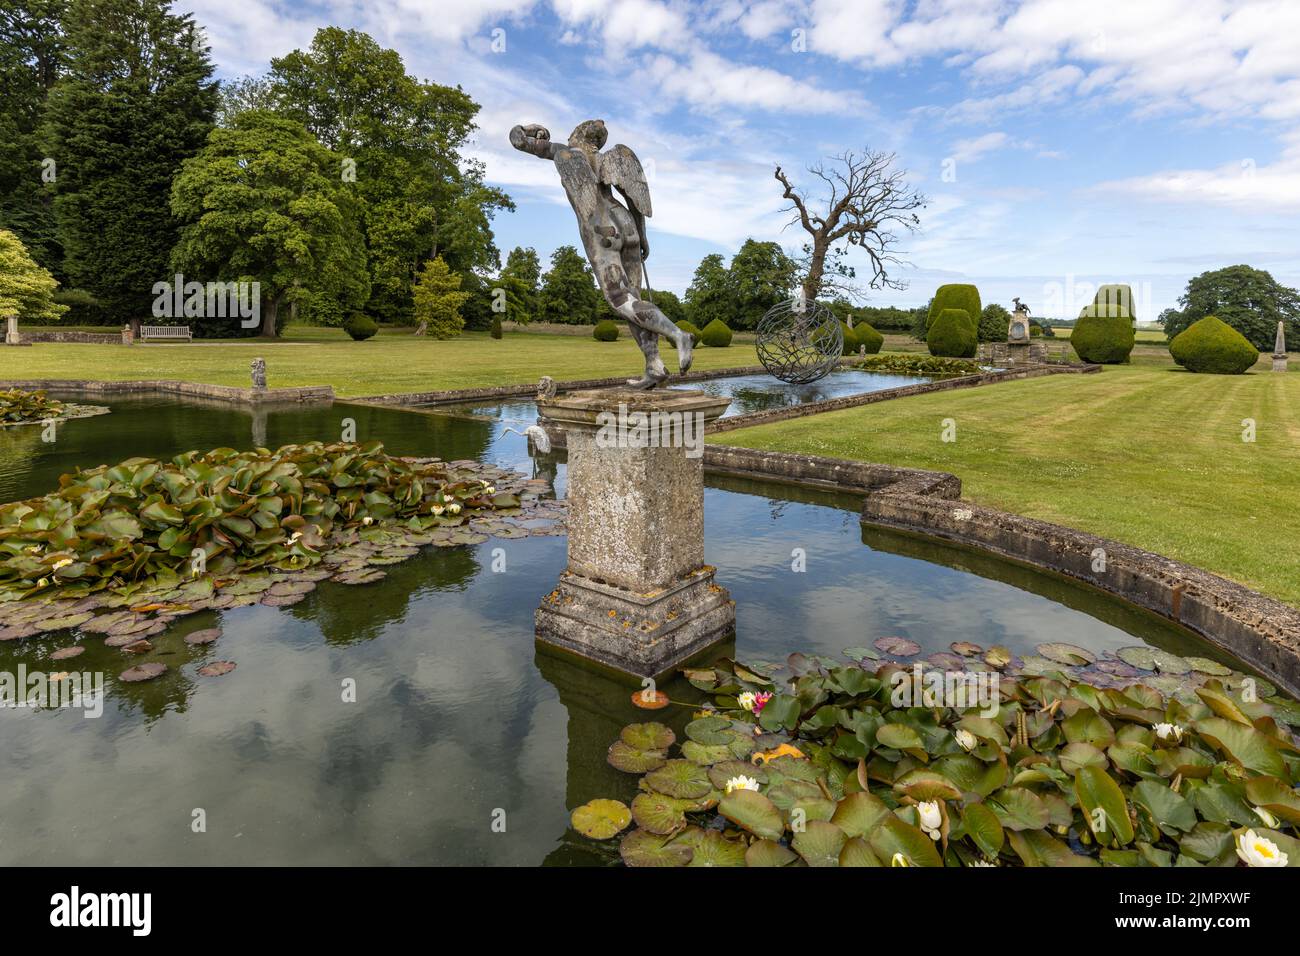 Statue dans un étang à nénuphars dans le jardin formel du Burton Agnes Hall, superbe manoir élisabéthain datant de 17th ans dans l'East Riding du Yorkshire, en Angleterre. Banque D'Images